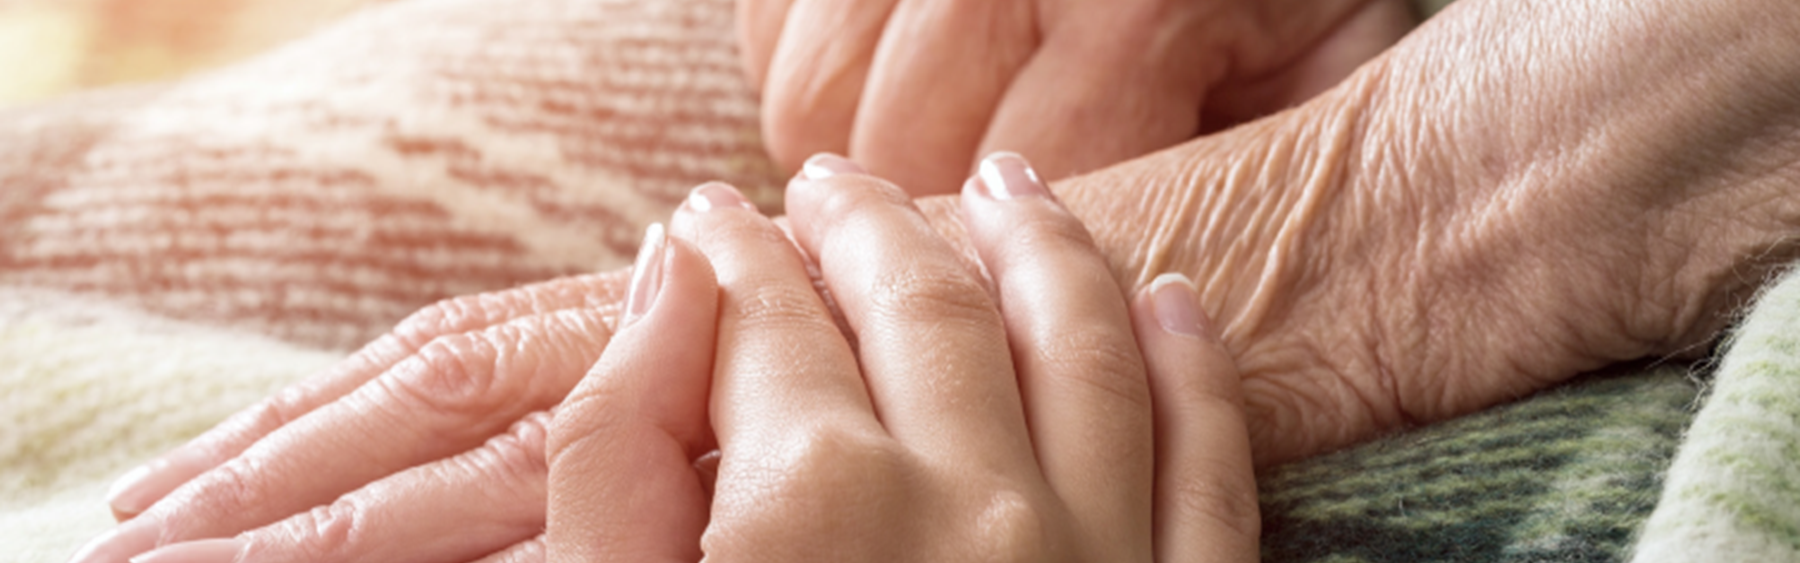 En yngre kvinde holder en ældre borger i hånden. Deres hænder ligger på et tæppe på den ældre persons skød.